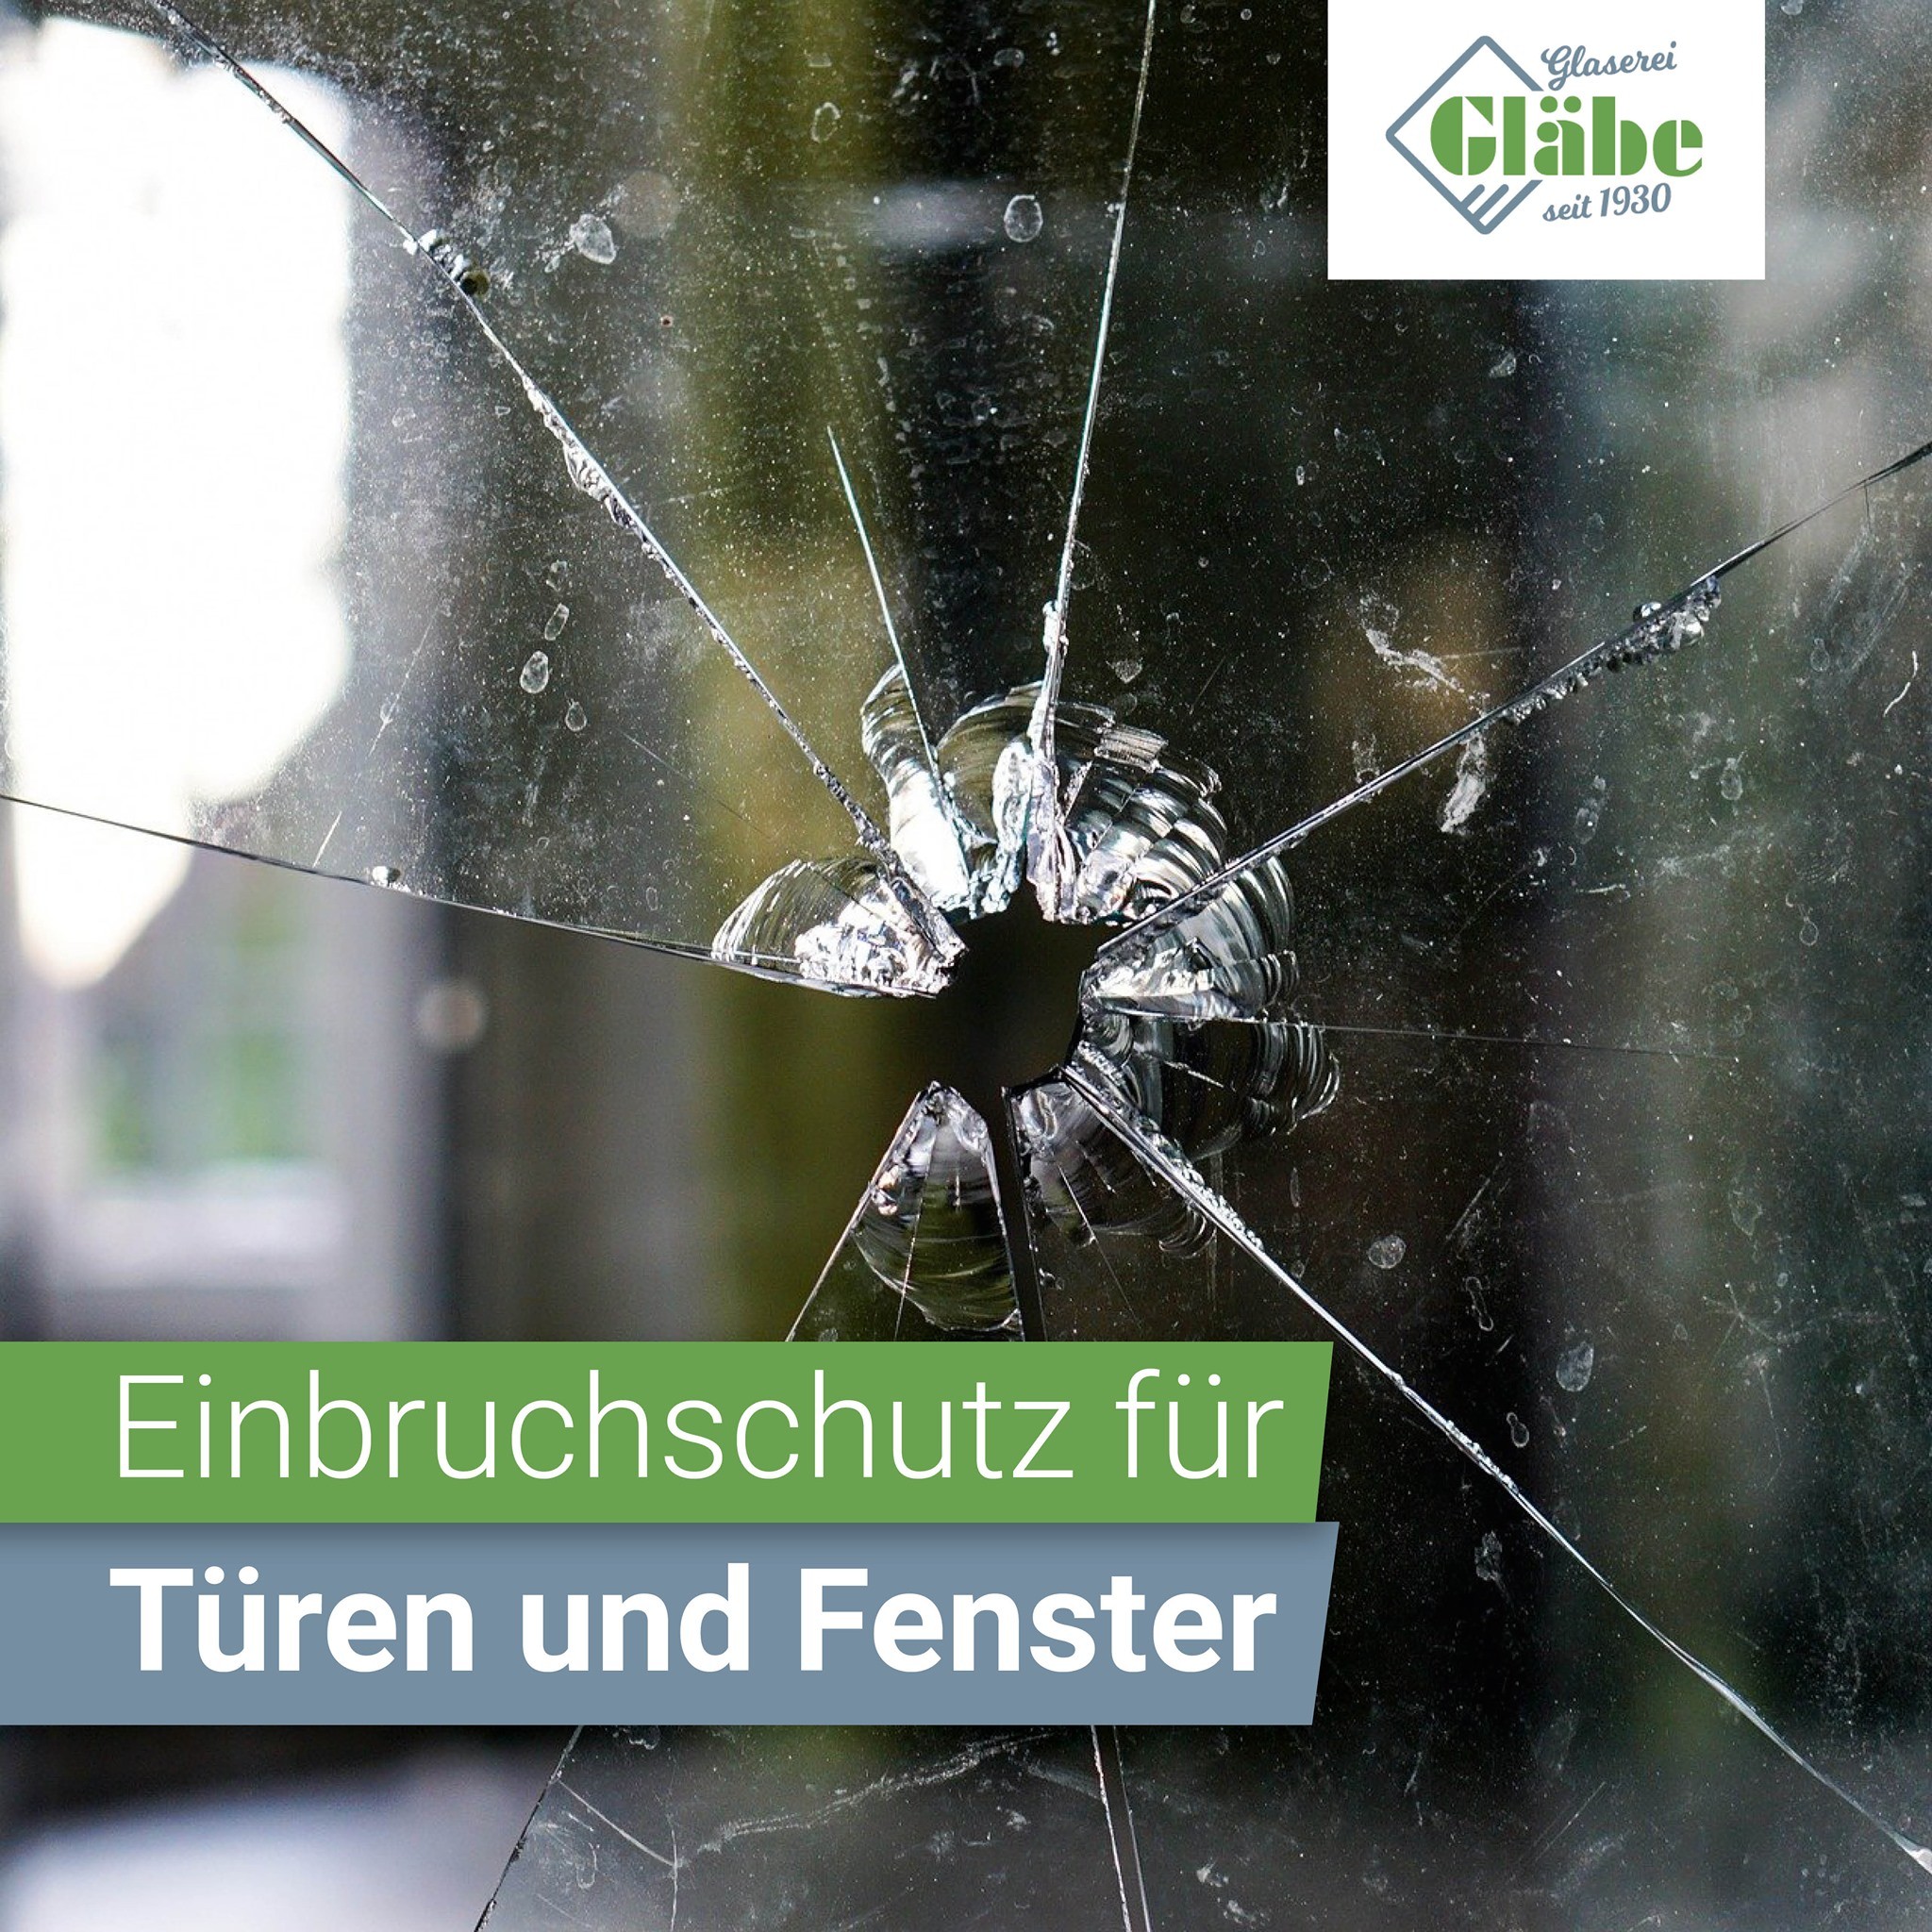 Glaserei-Bremen_Glaebe_Einbruchschutz-Tueren-Fenster